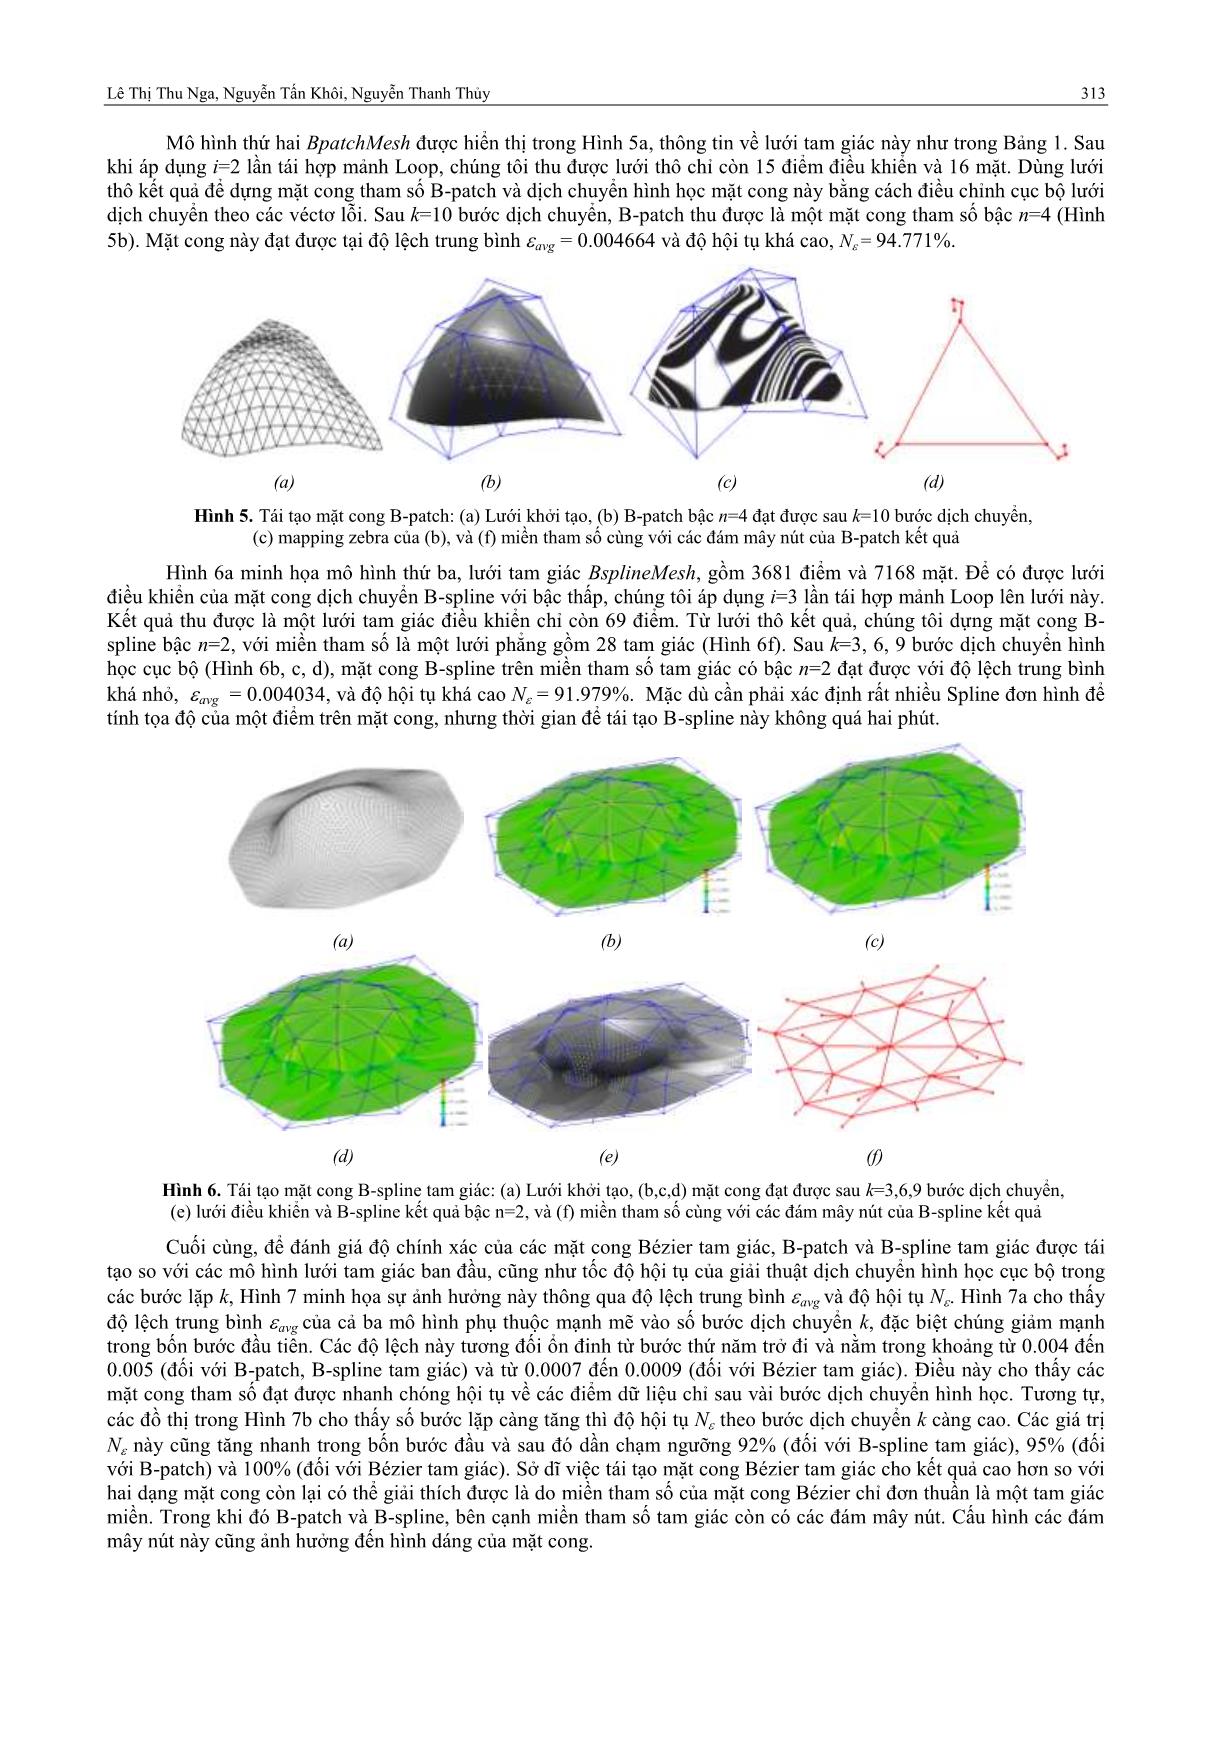 Mô hình hóa mặt cong tham số bậc thấp từ lưới tam giác dựa trên phương pháp dịch chuyển hình học cục bộ trang 6